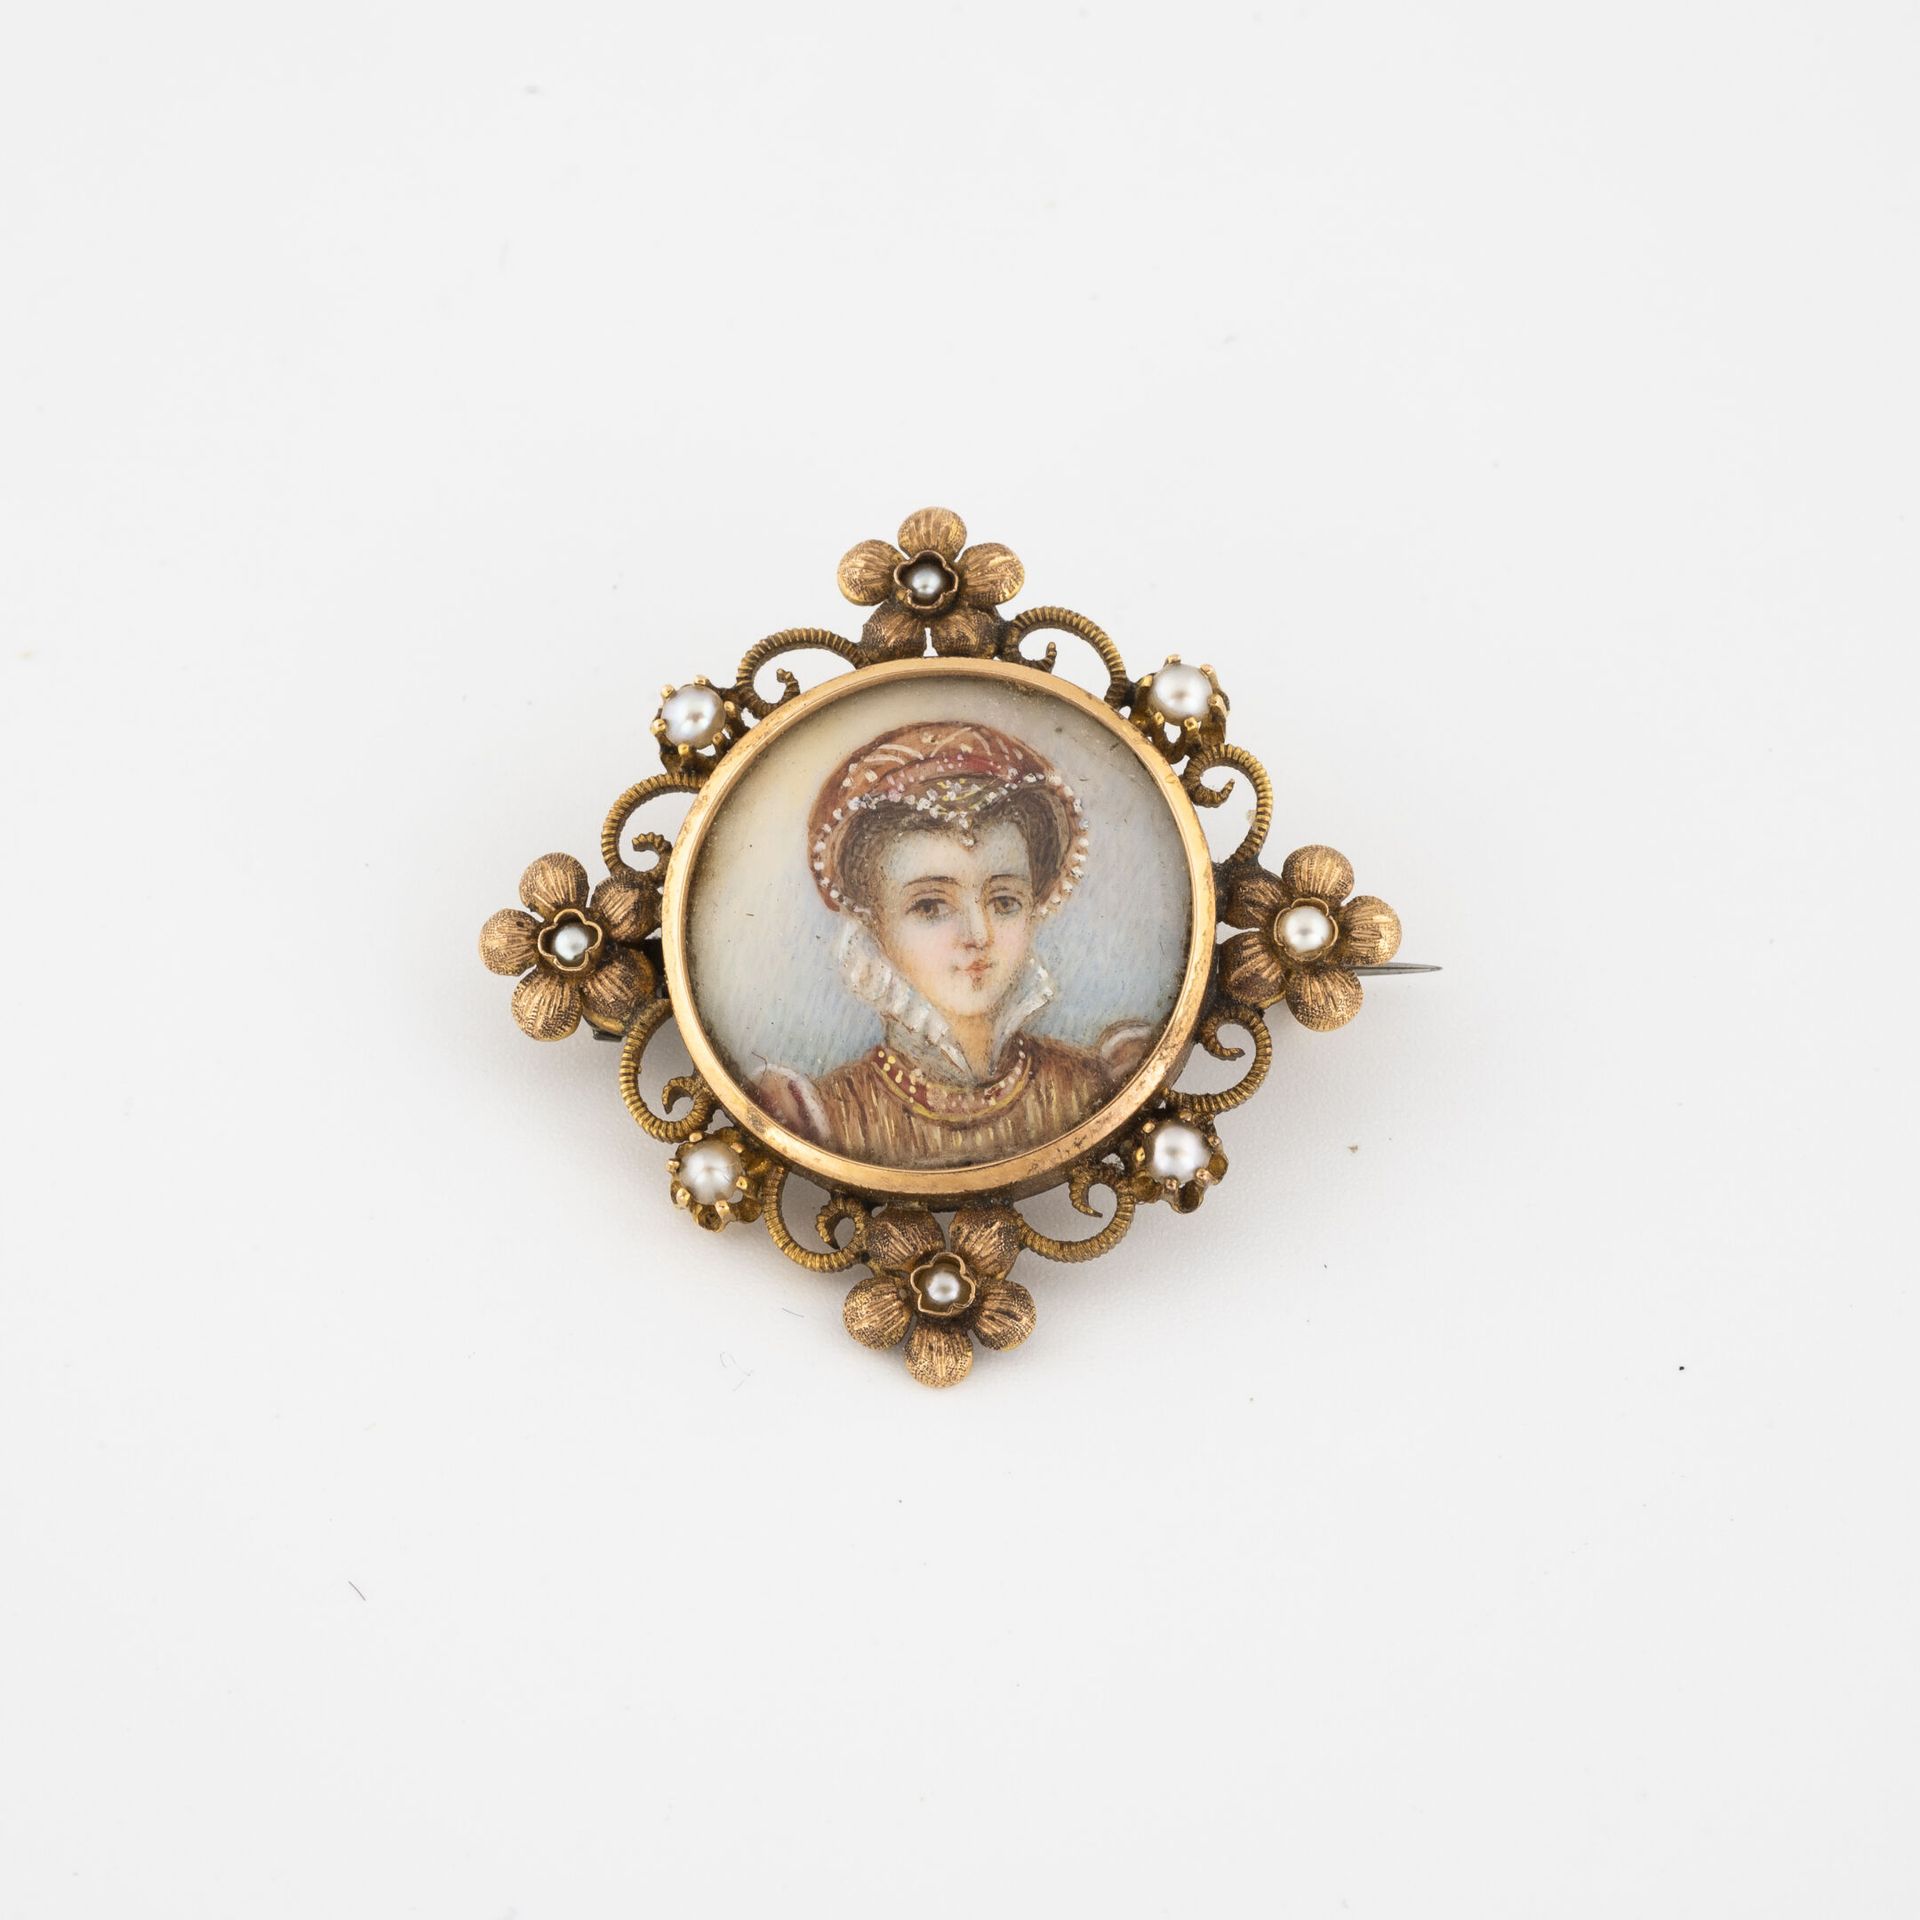 Null 黄金（750）和白色马贝珍珠的小胸针，中心是一个文艺复兴风格的年轻女子半身像的徽章，在花的框架中。

反面有白色珍珠母板。

金属销。

毛重：5.2&hellip;